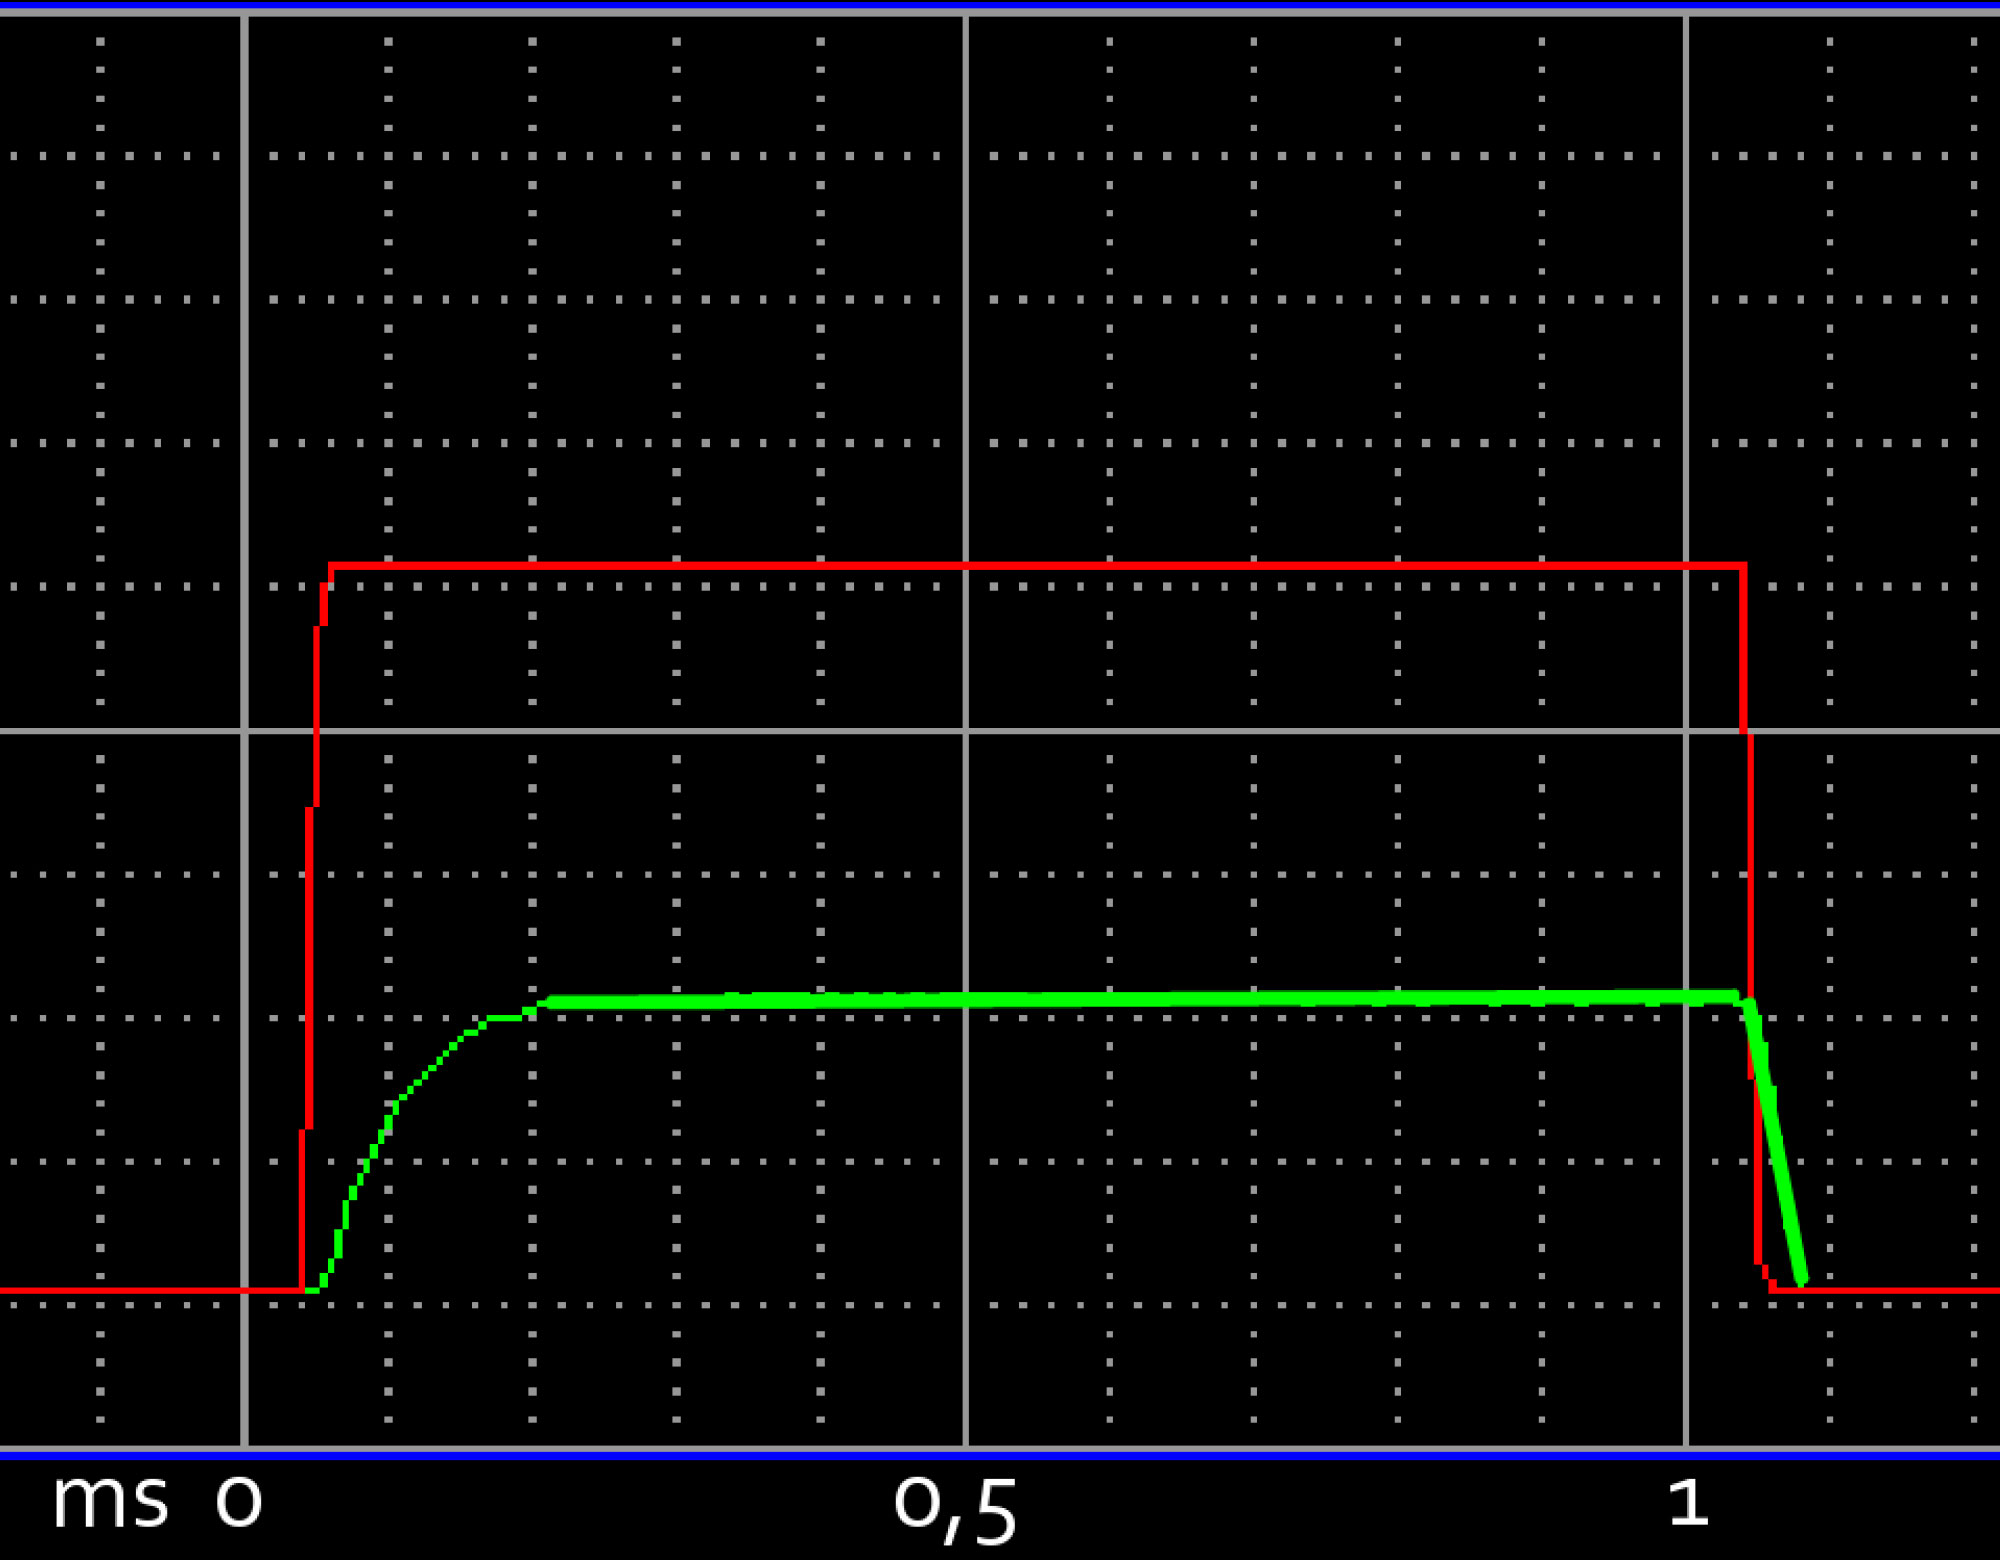 Diagramm der Reaktionszeit einer Blitzbeleuchtung der planistar Lichttechnik GmH